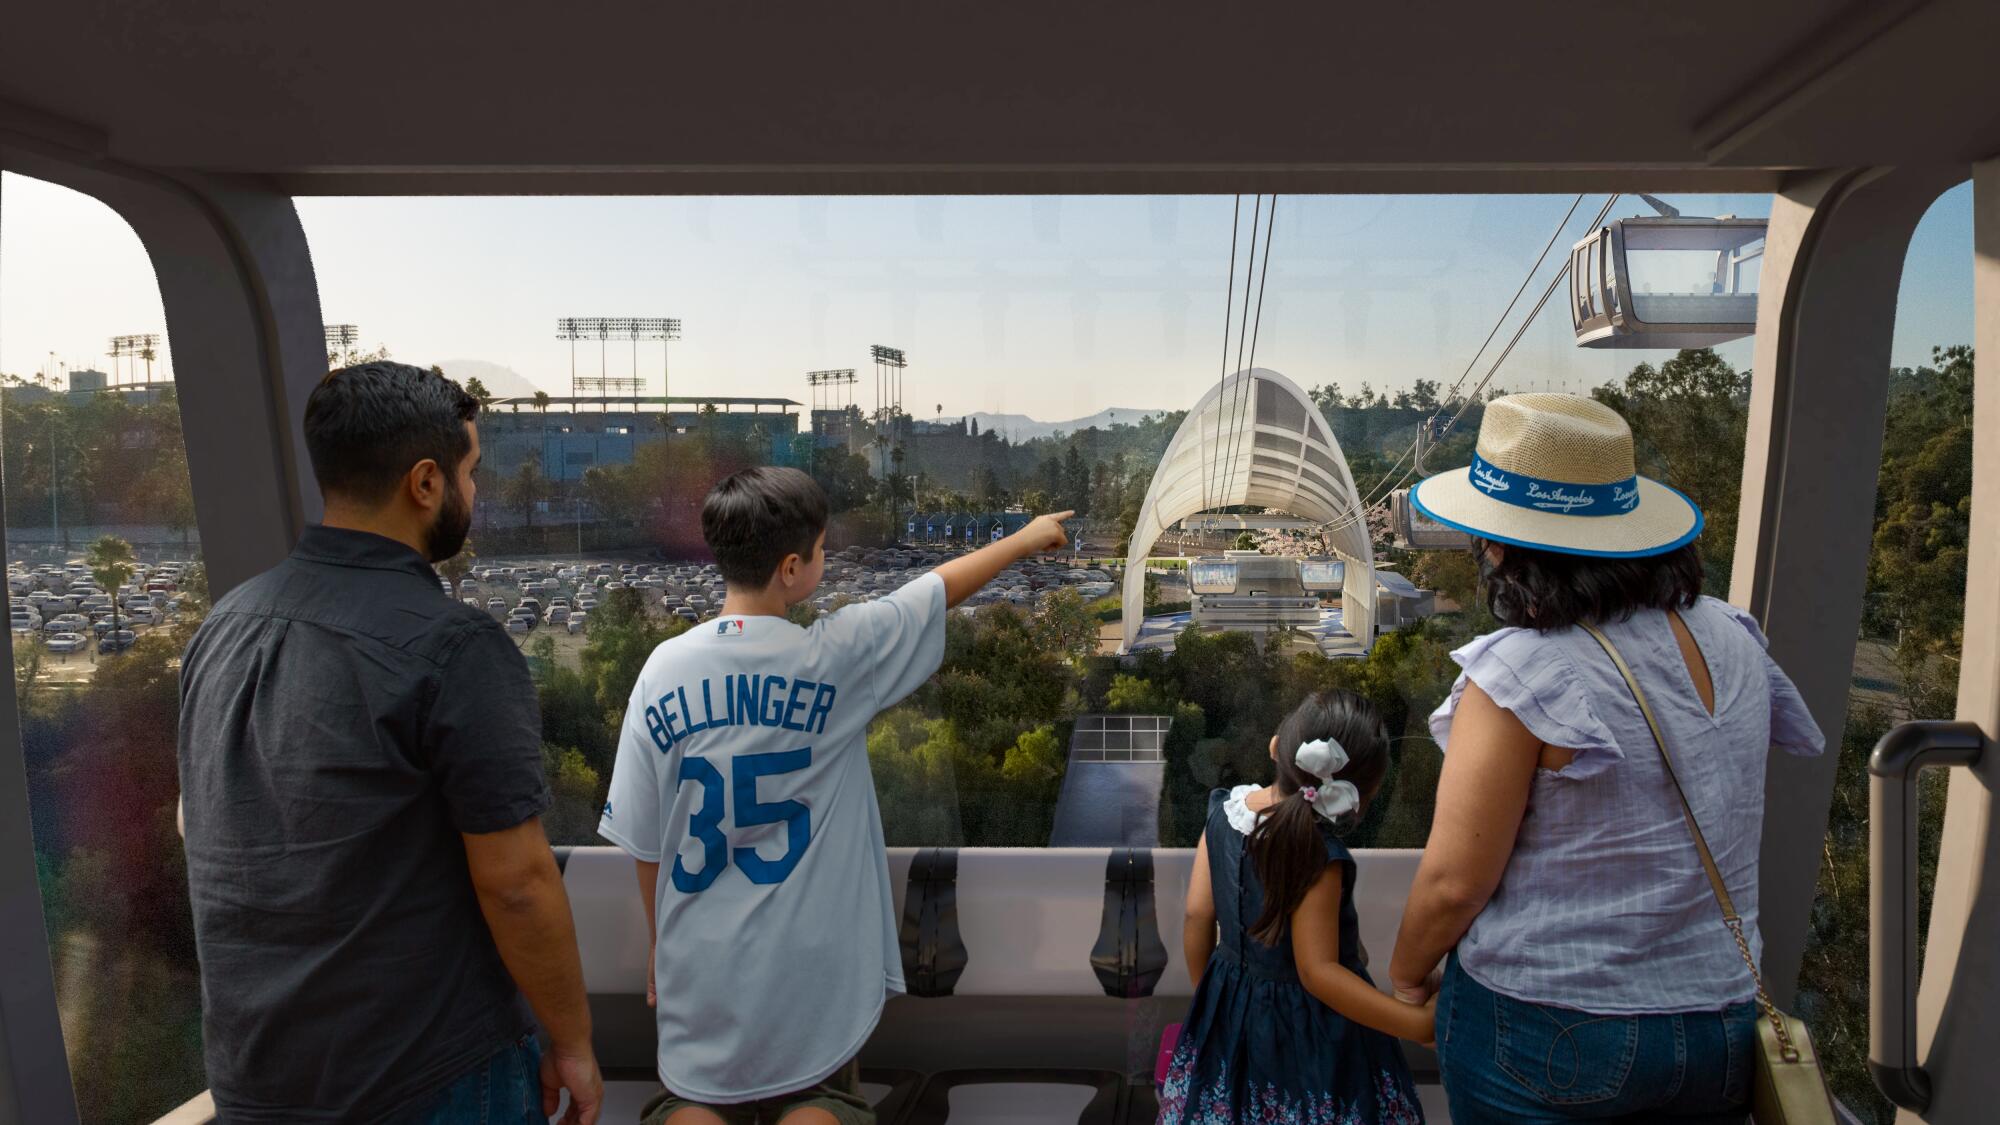 Representación artística de una góndola acercándose a la terminal del estadio de los Dodgers.